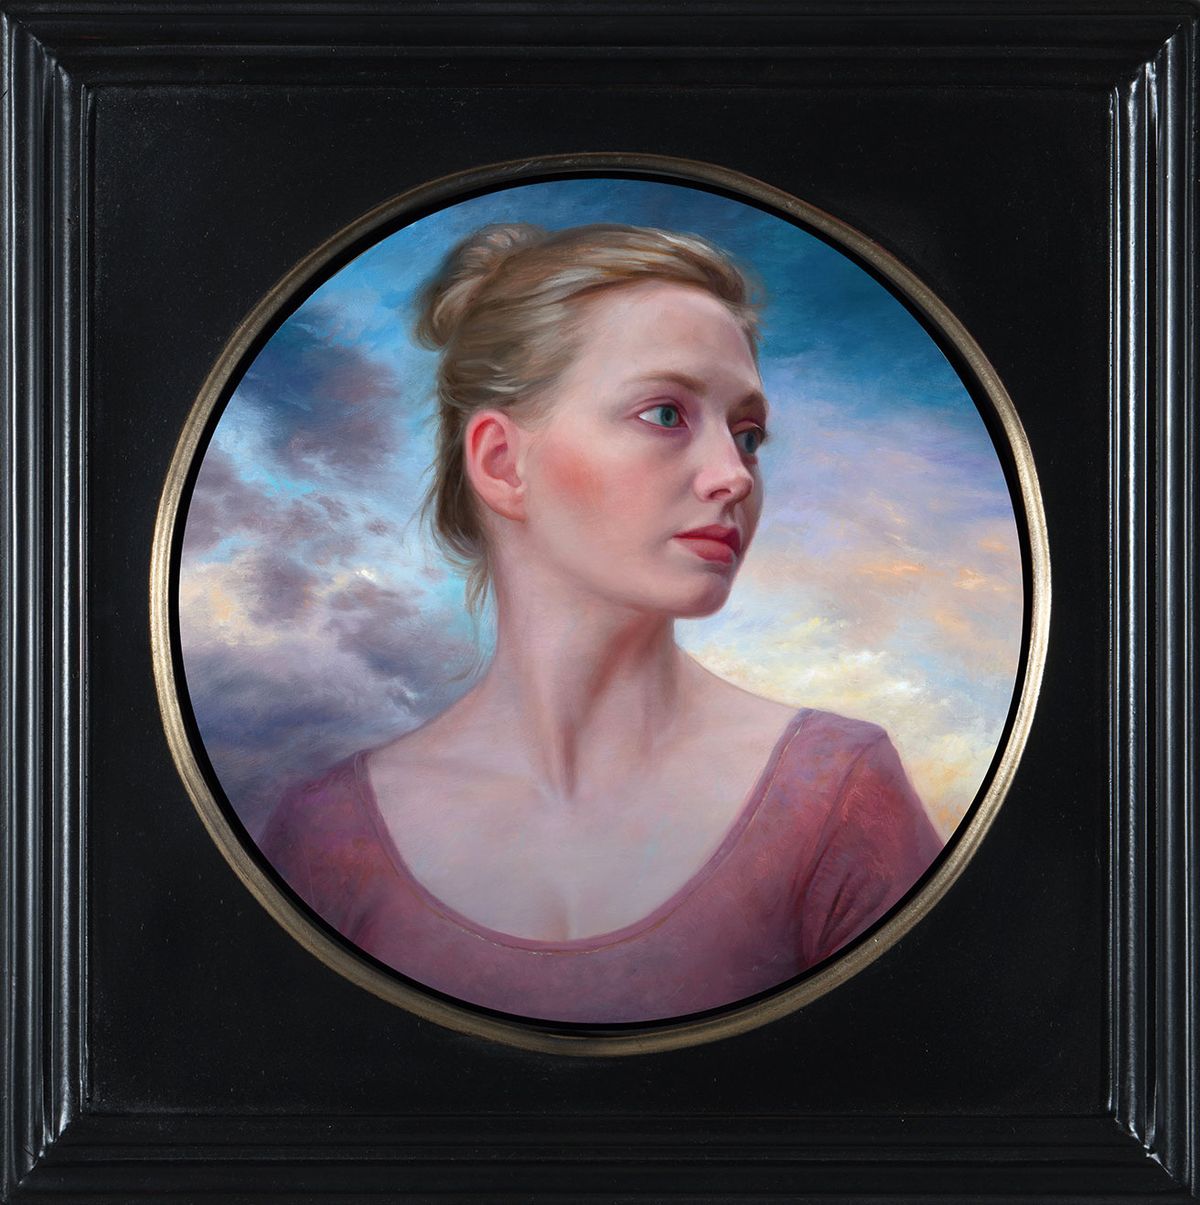 Das letzte Porträt in einem schönen runden Rahmen